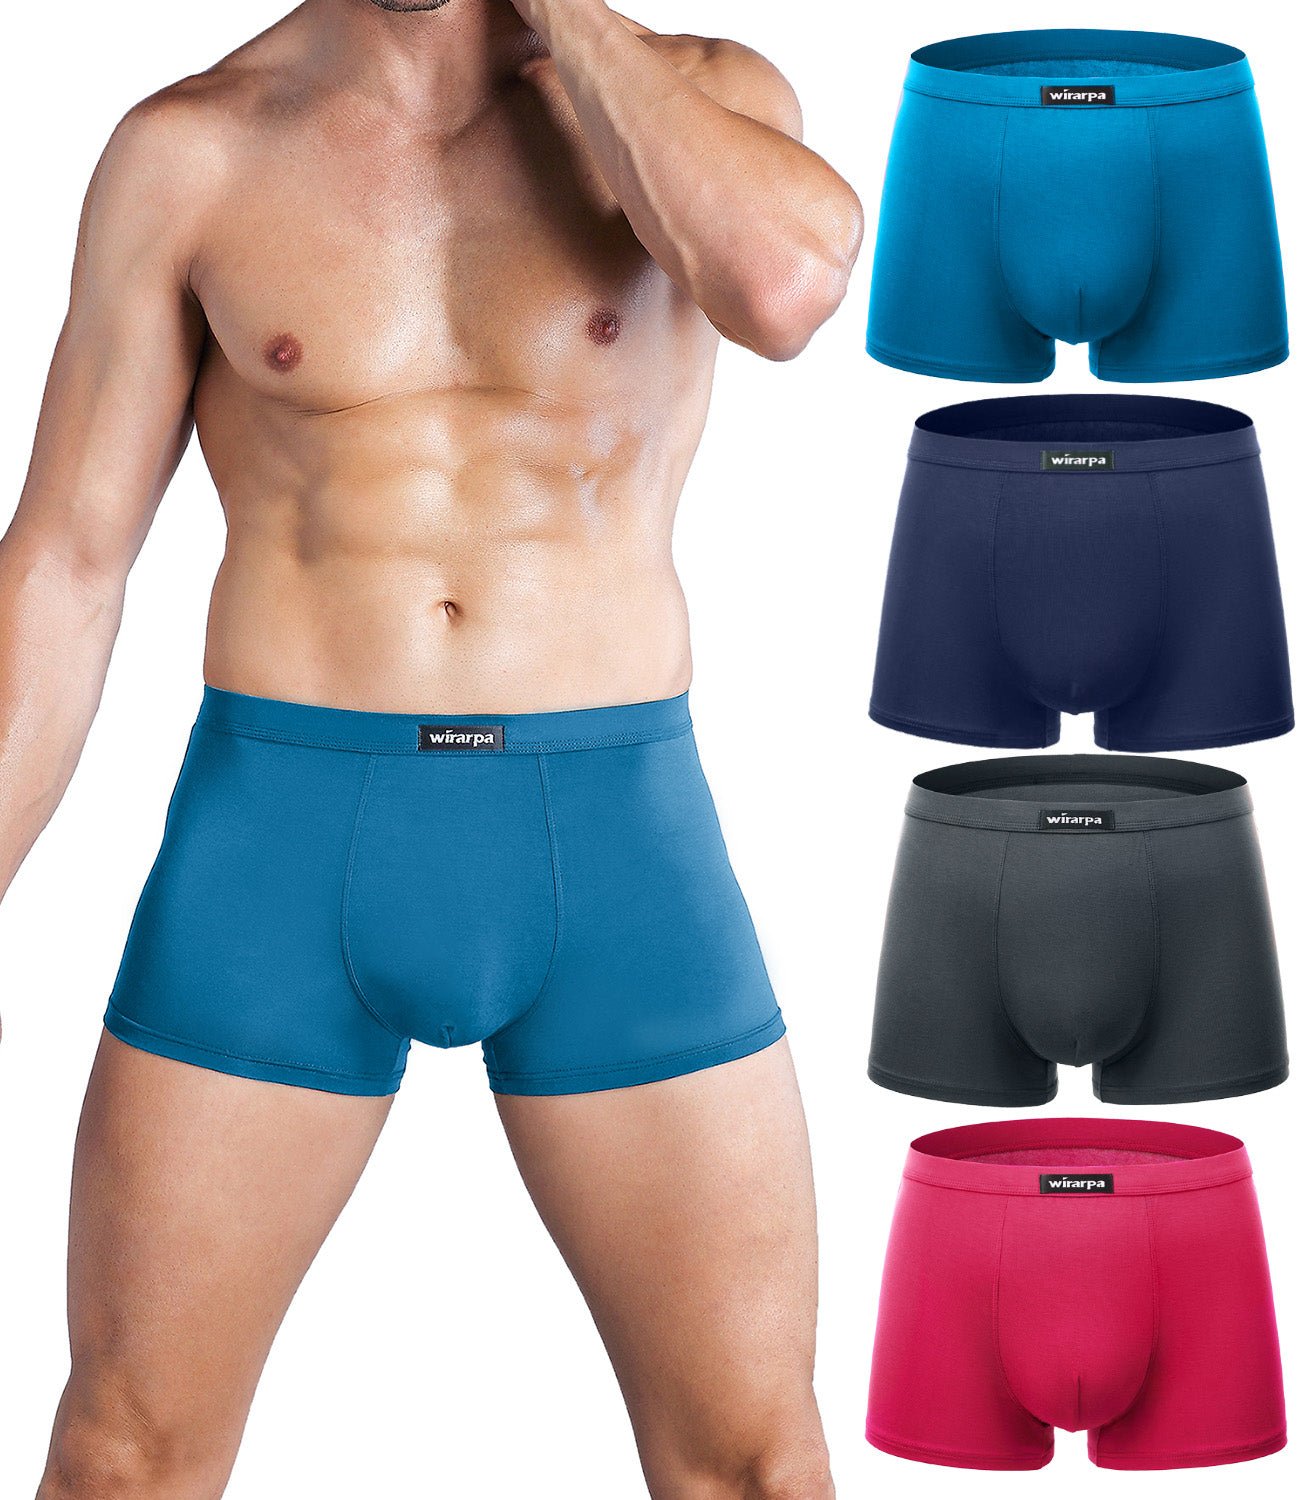 wirarpa Men’s Ultra Soft Silky Touch Viscose Underwear Briefs 4 Pack